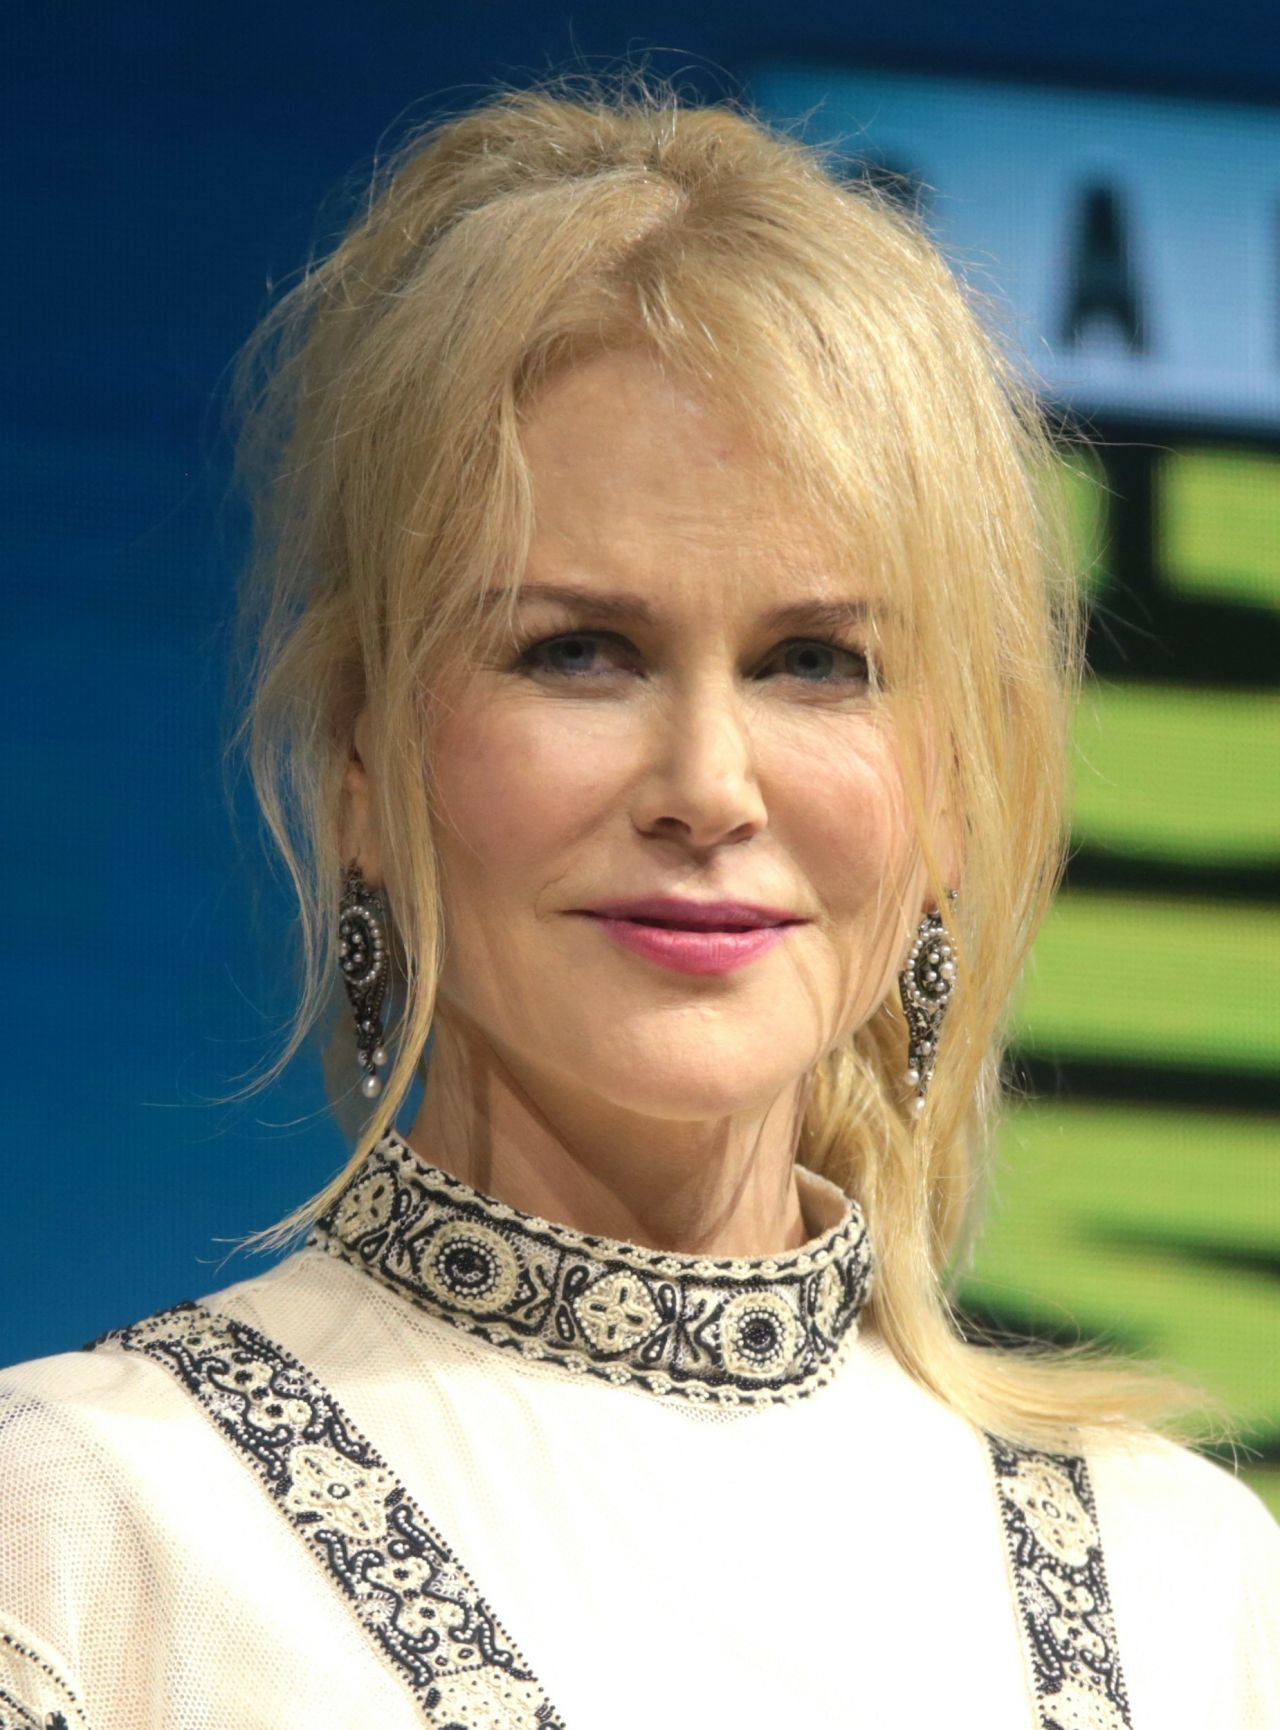 'Acımasız davrandılar' deyip Nicole Kidman isyan etti: 'Bitmiş' gözüyle bakılıyor